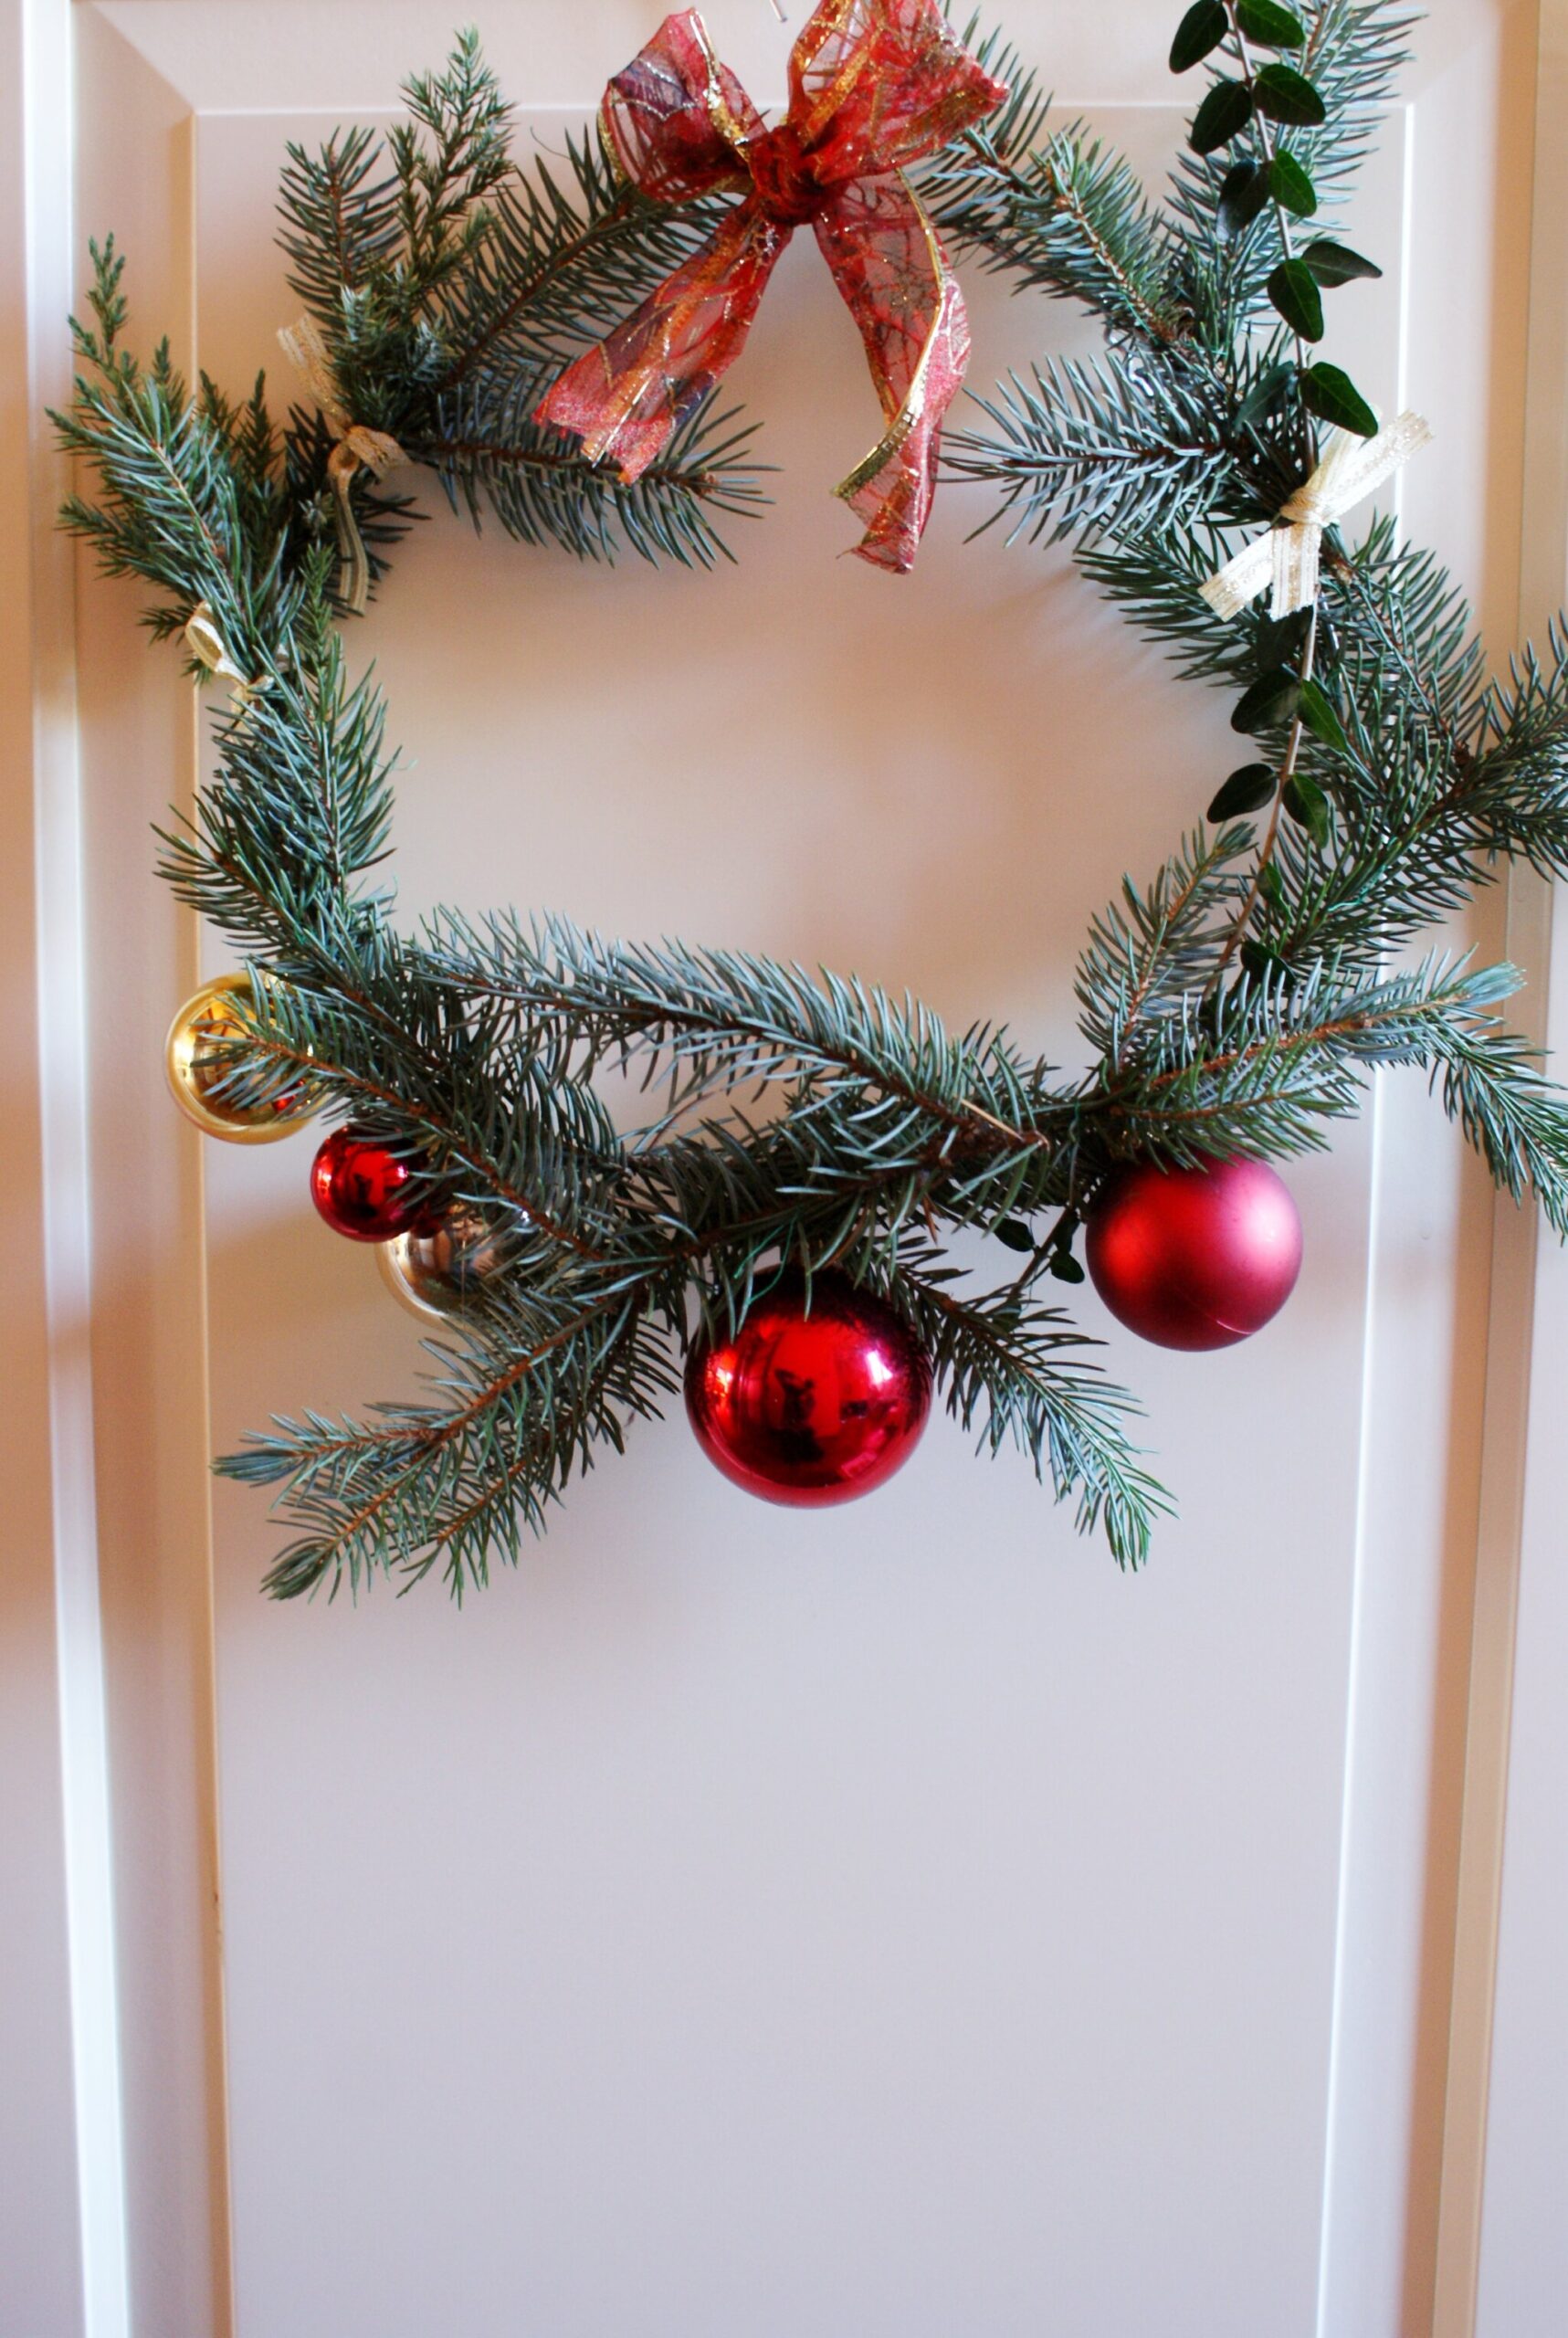 DIY CHRISTMAS WREATH: EASY HANDMADE DECOR IDEA FOR YOUR HOME